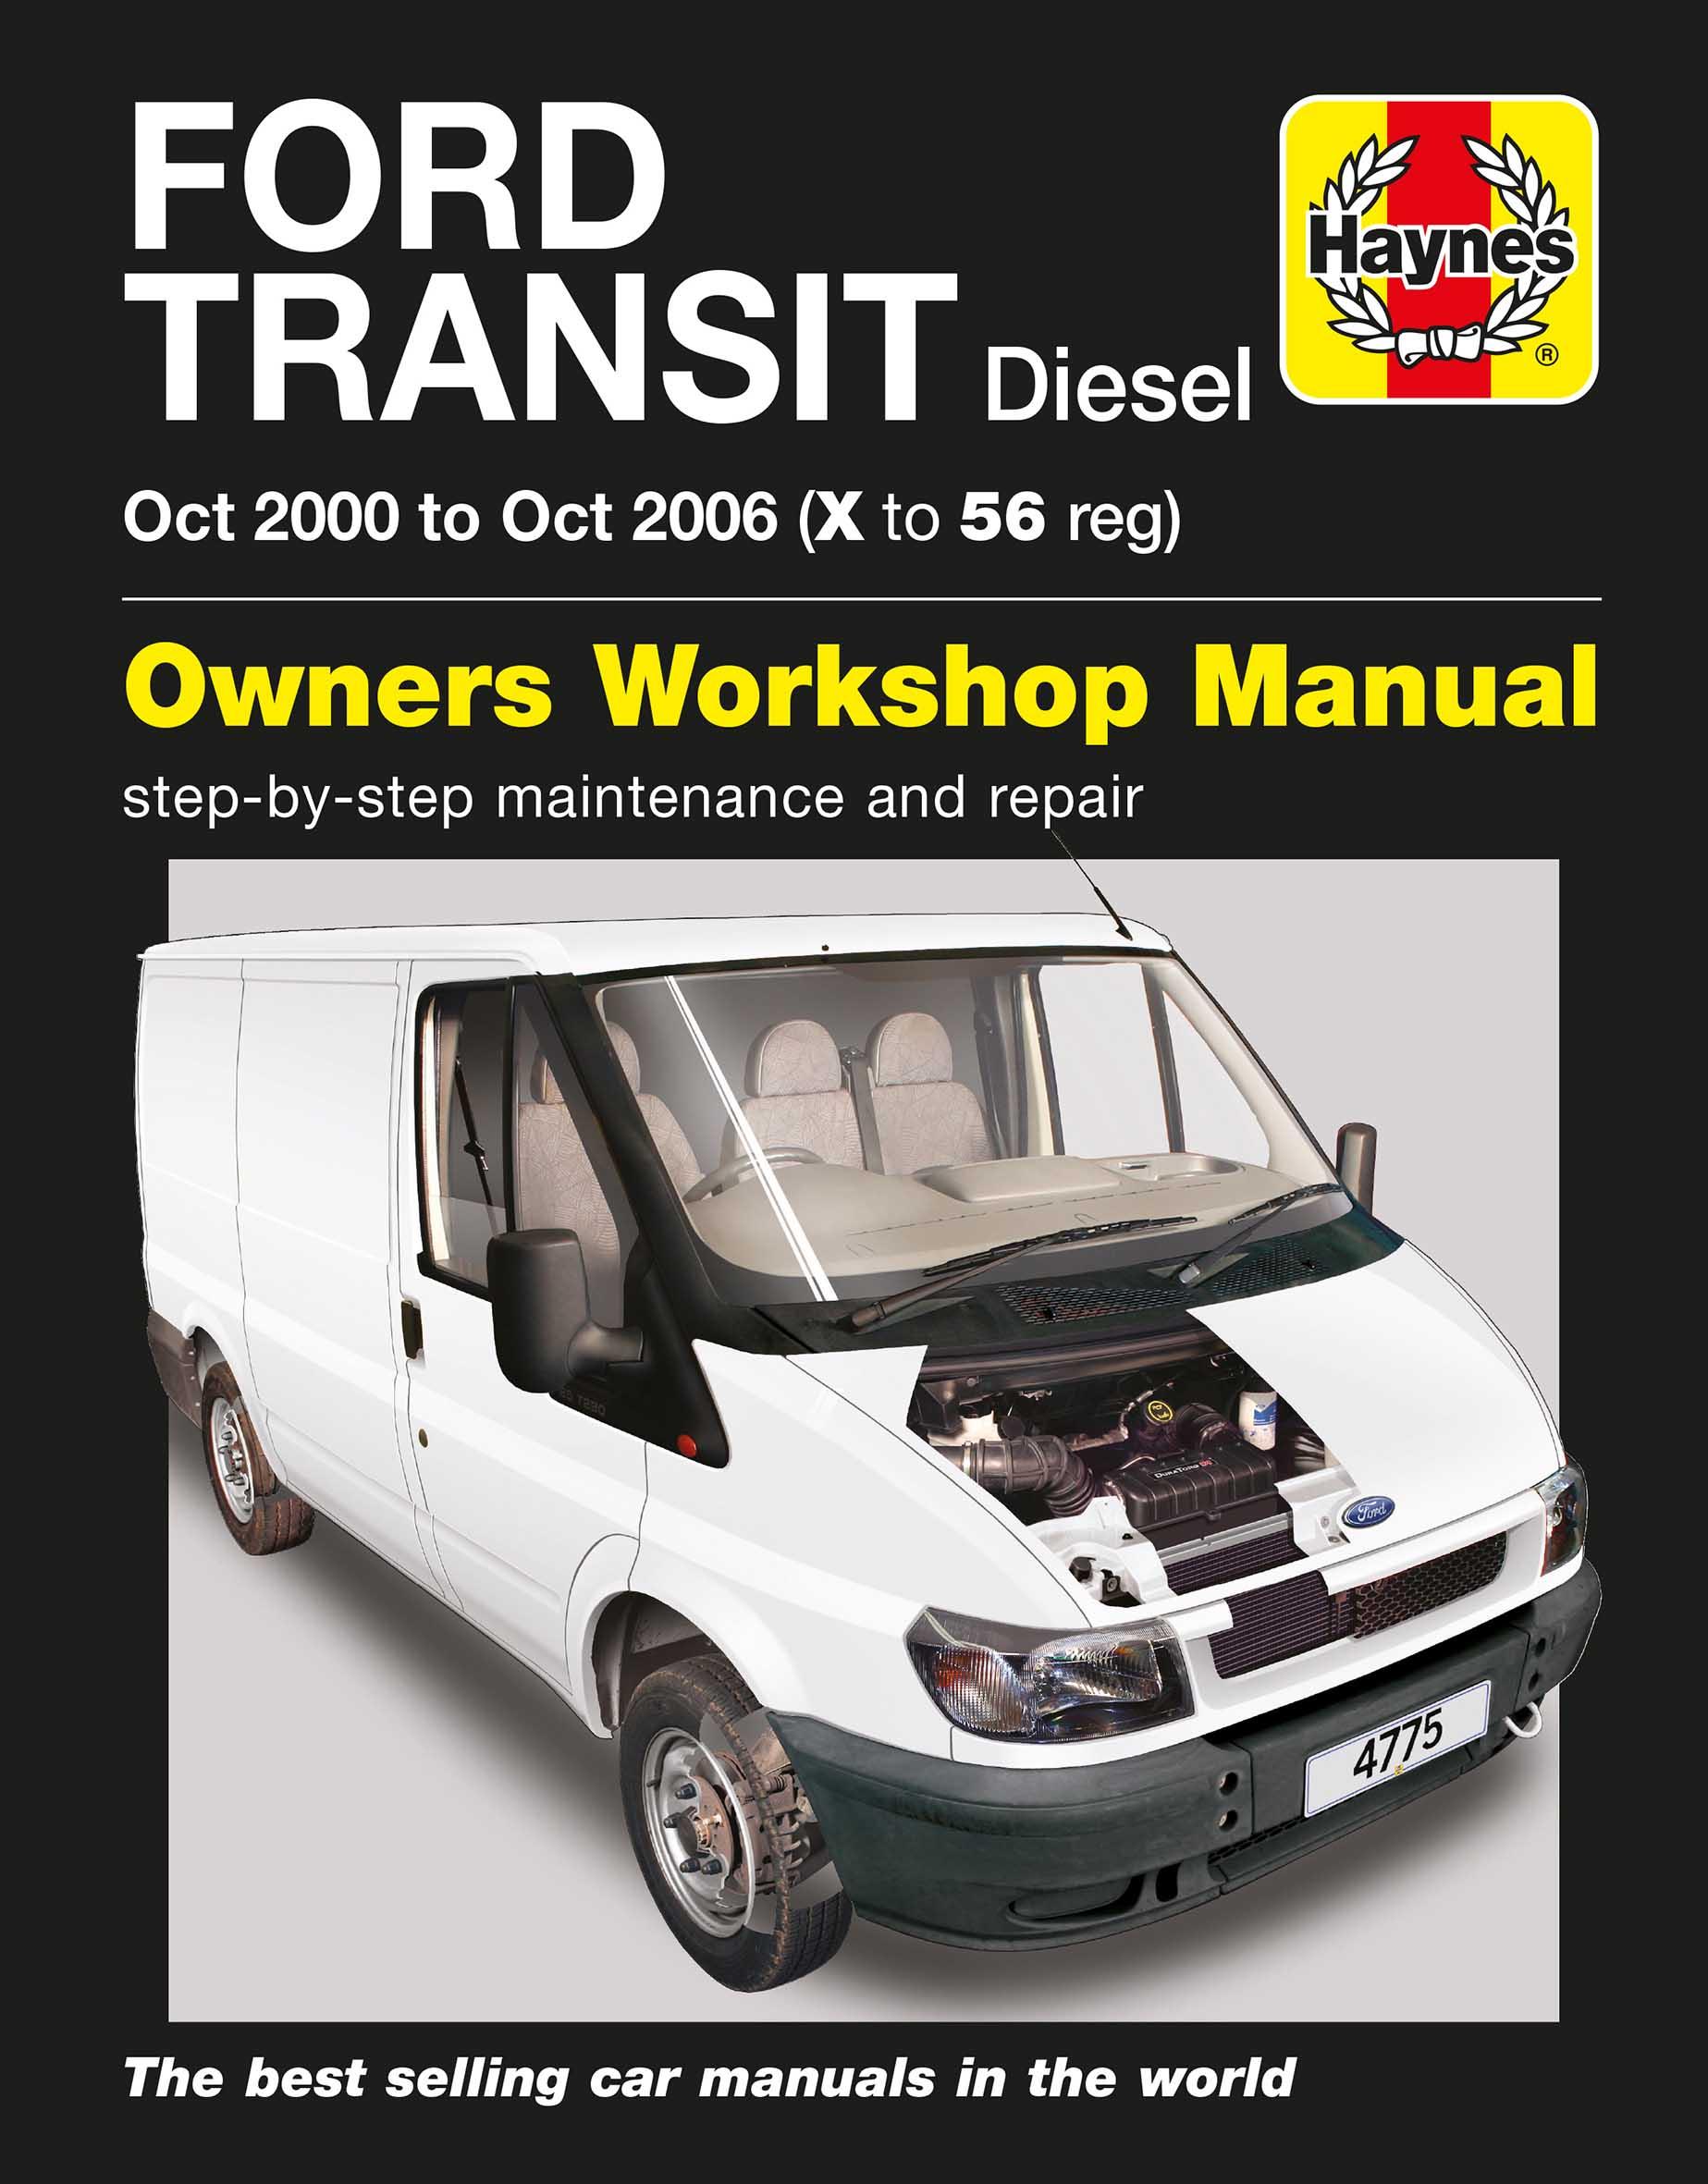 Haynes Workshop Manual Ford Transit Custom Diesel 2013-2017 New Service Repair 